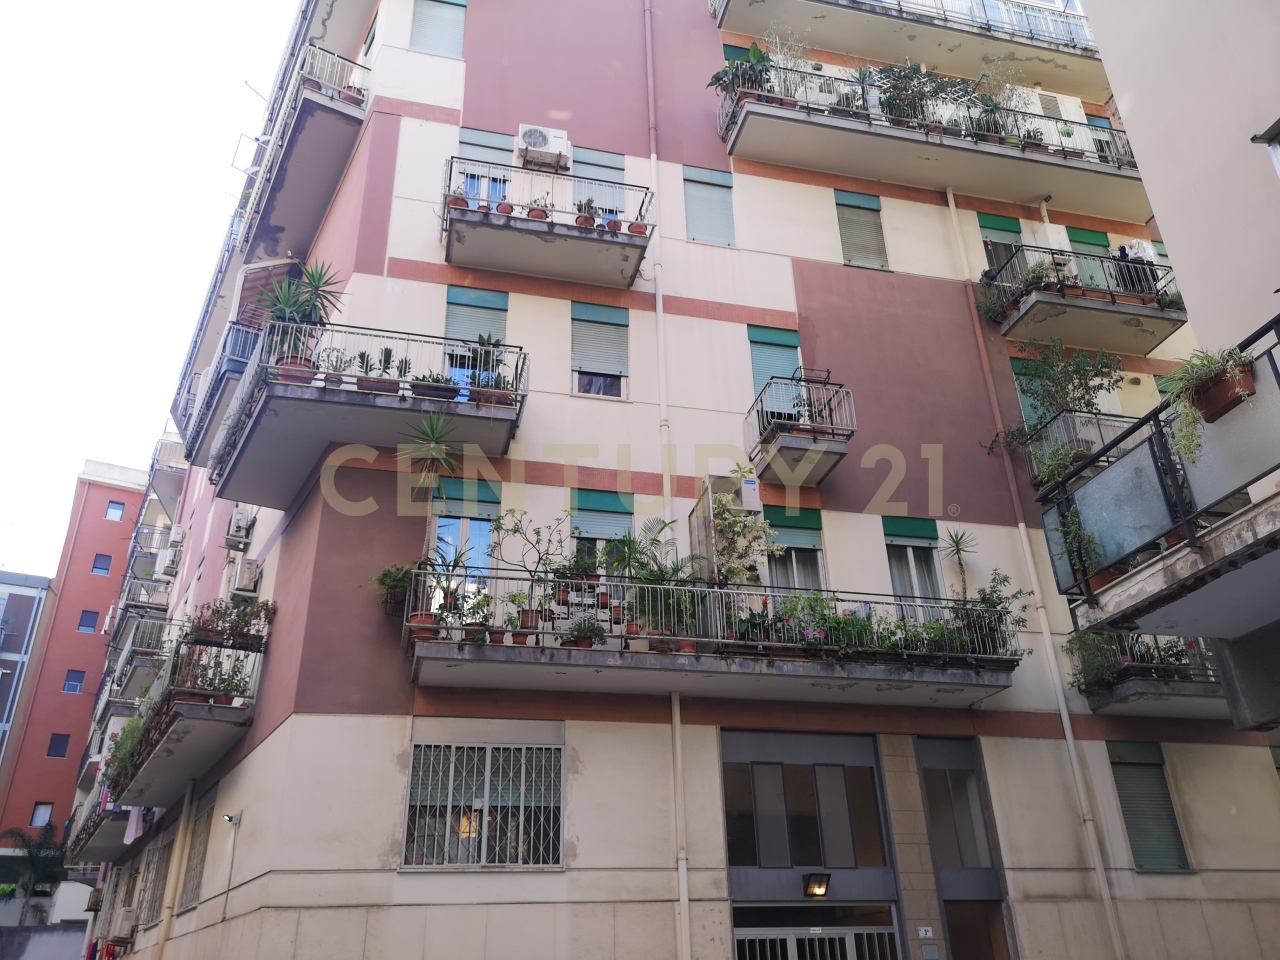 Appartamento in vendita a Messina, 6 locali, prezzo € 130.000 | PortaleAgenzieImmobiliari.it